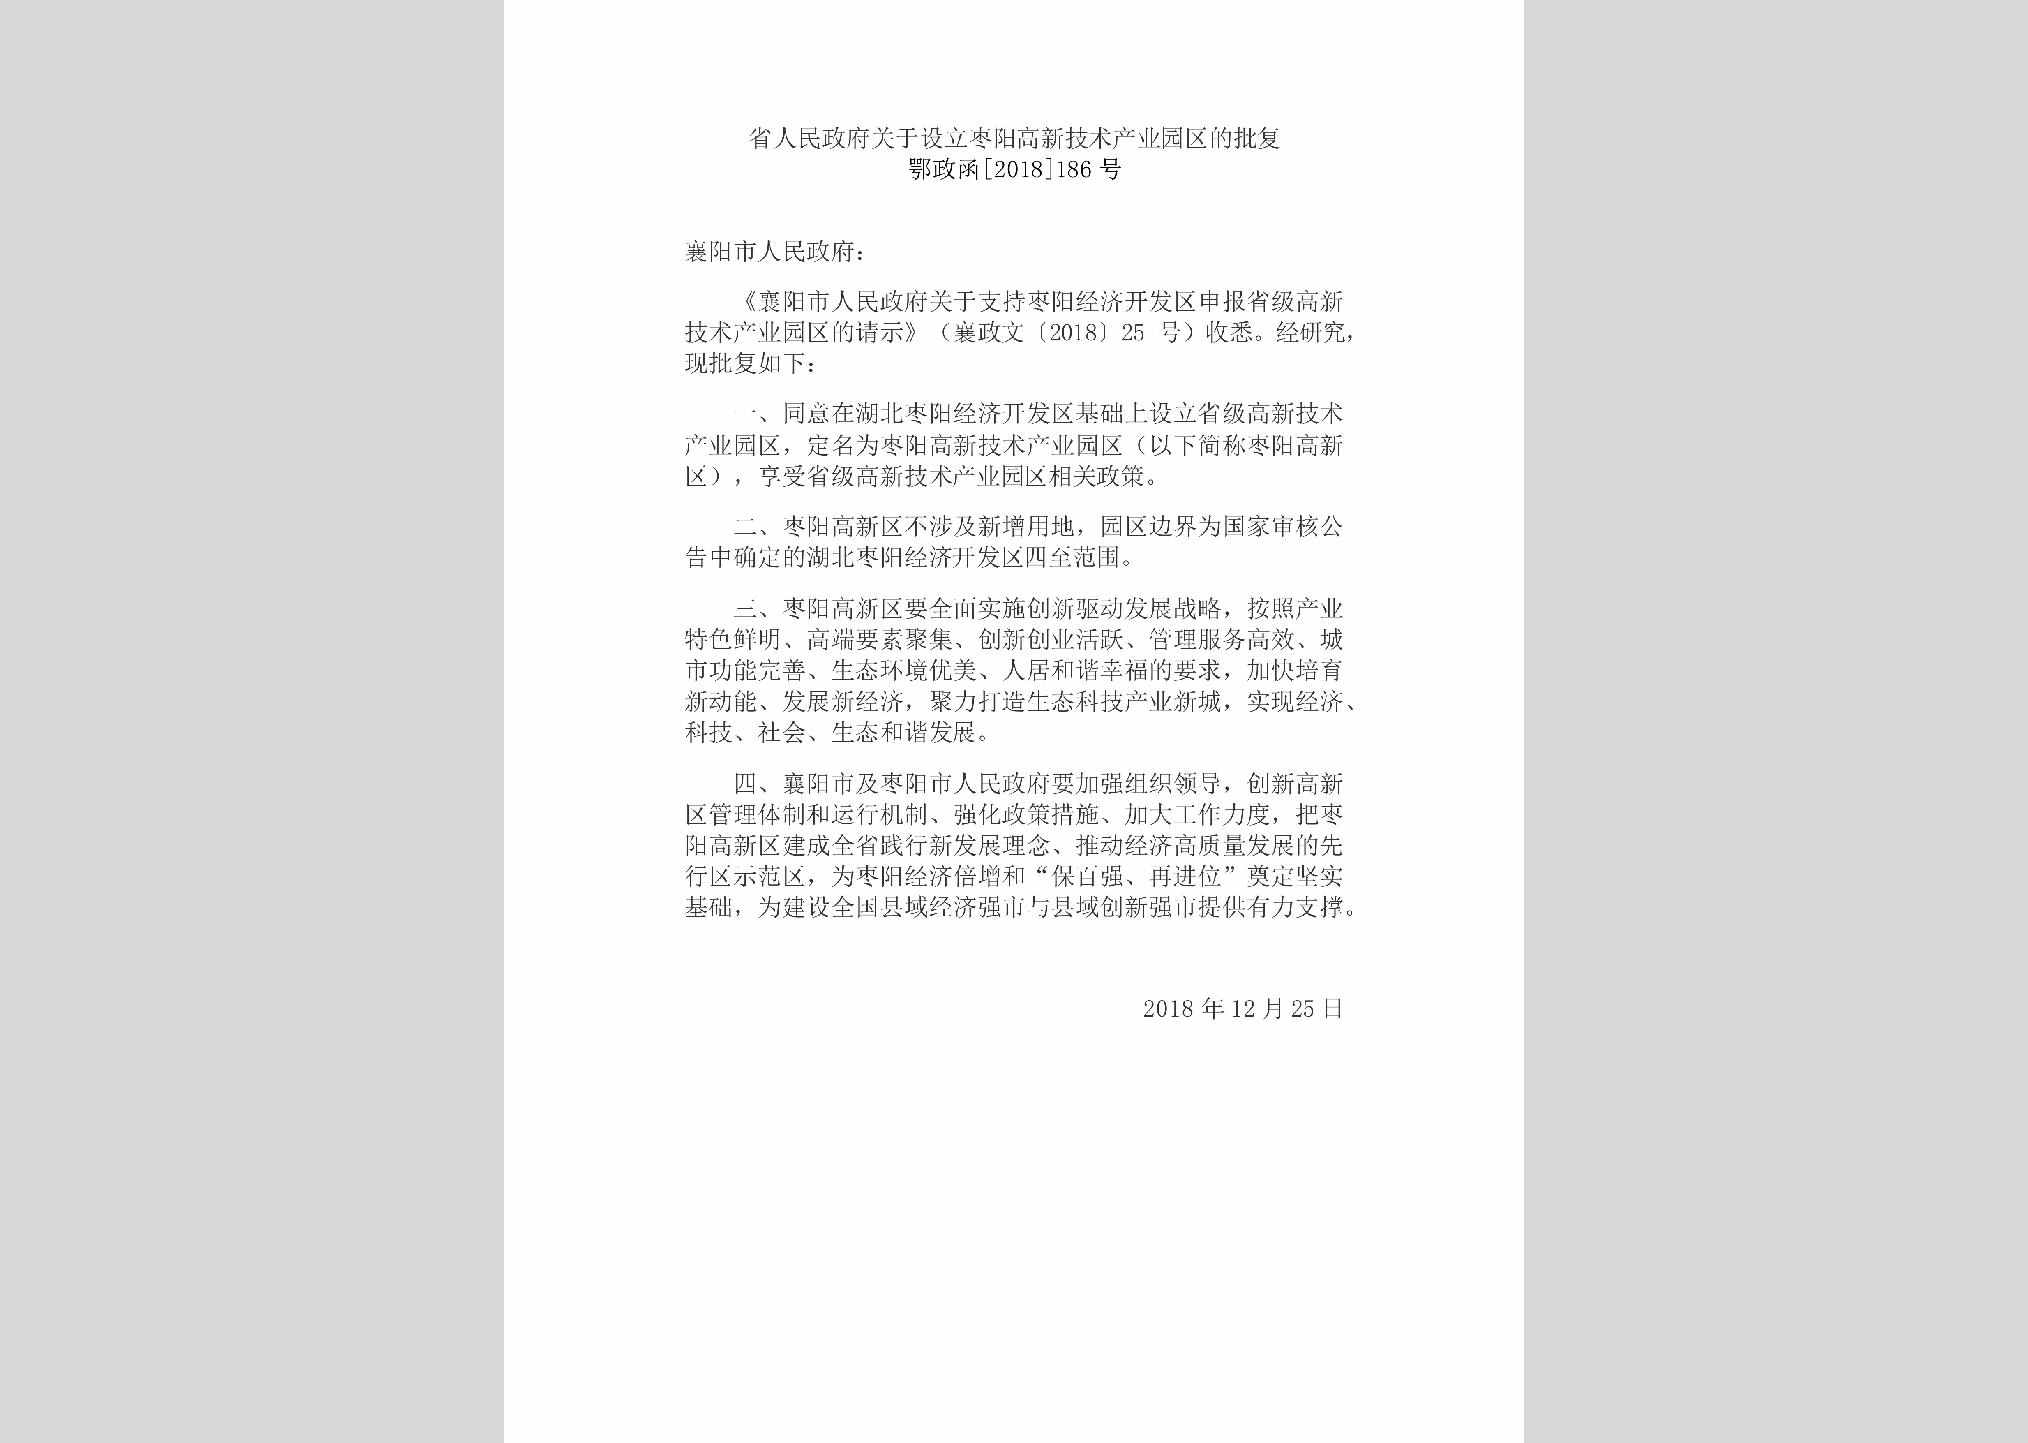 鄂政函[2018]186号：省人民政府关于设立枣阳高新技术产业园区的批复